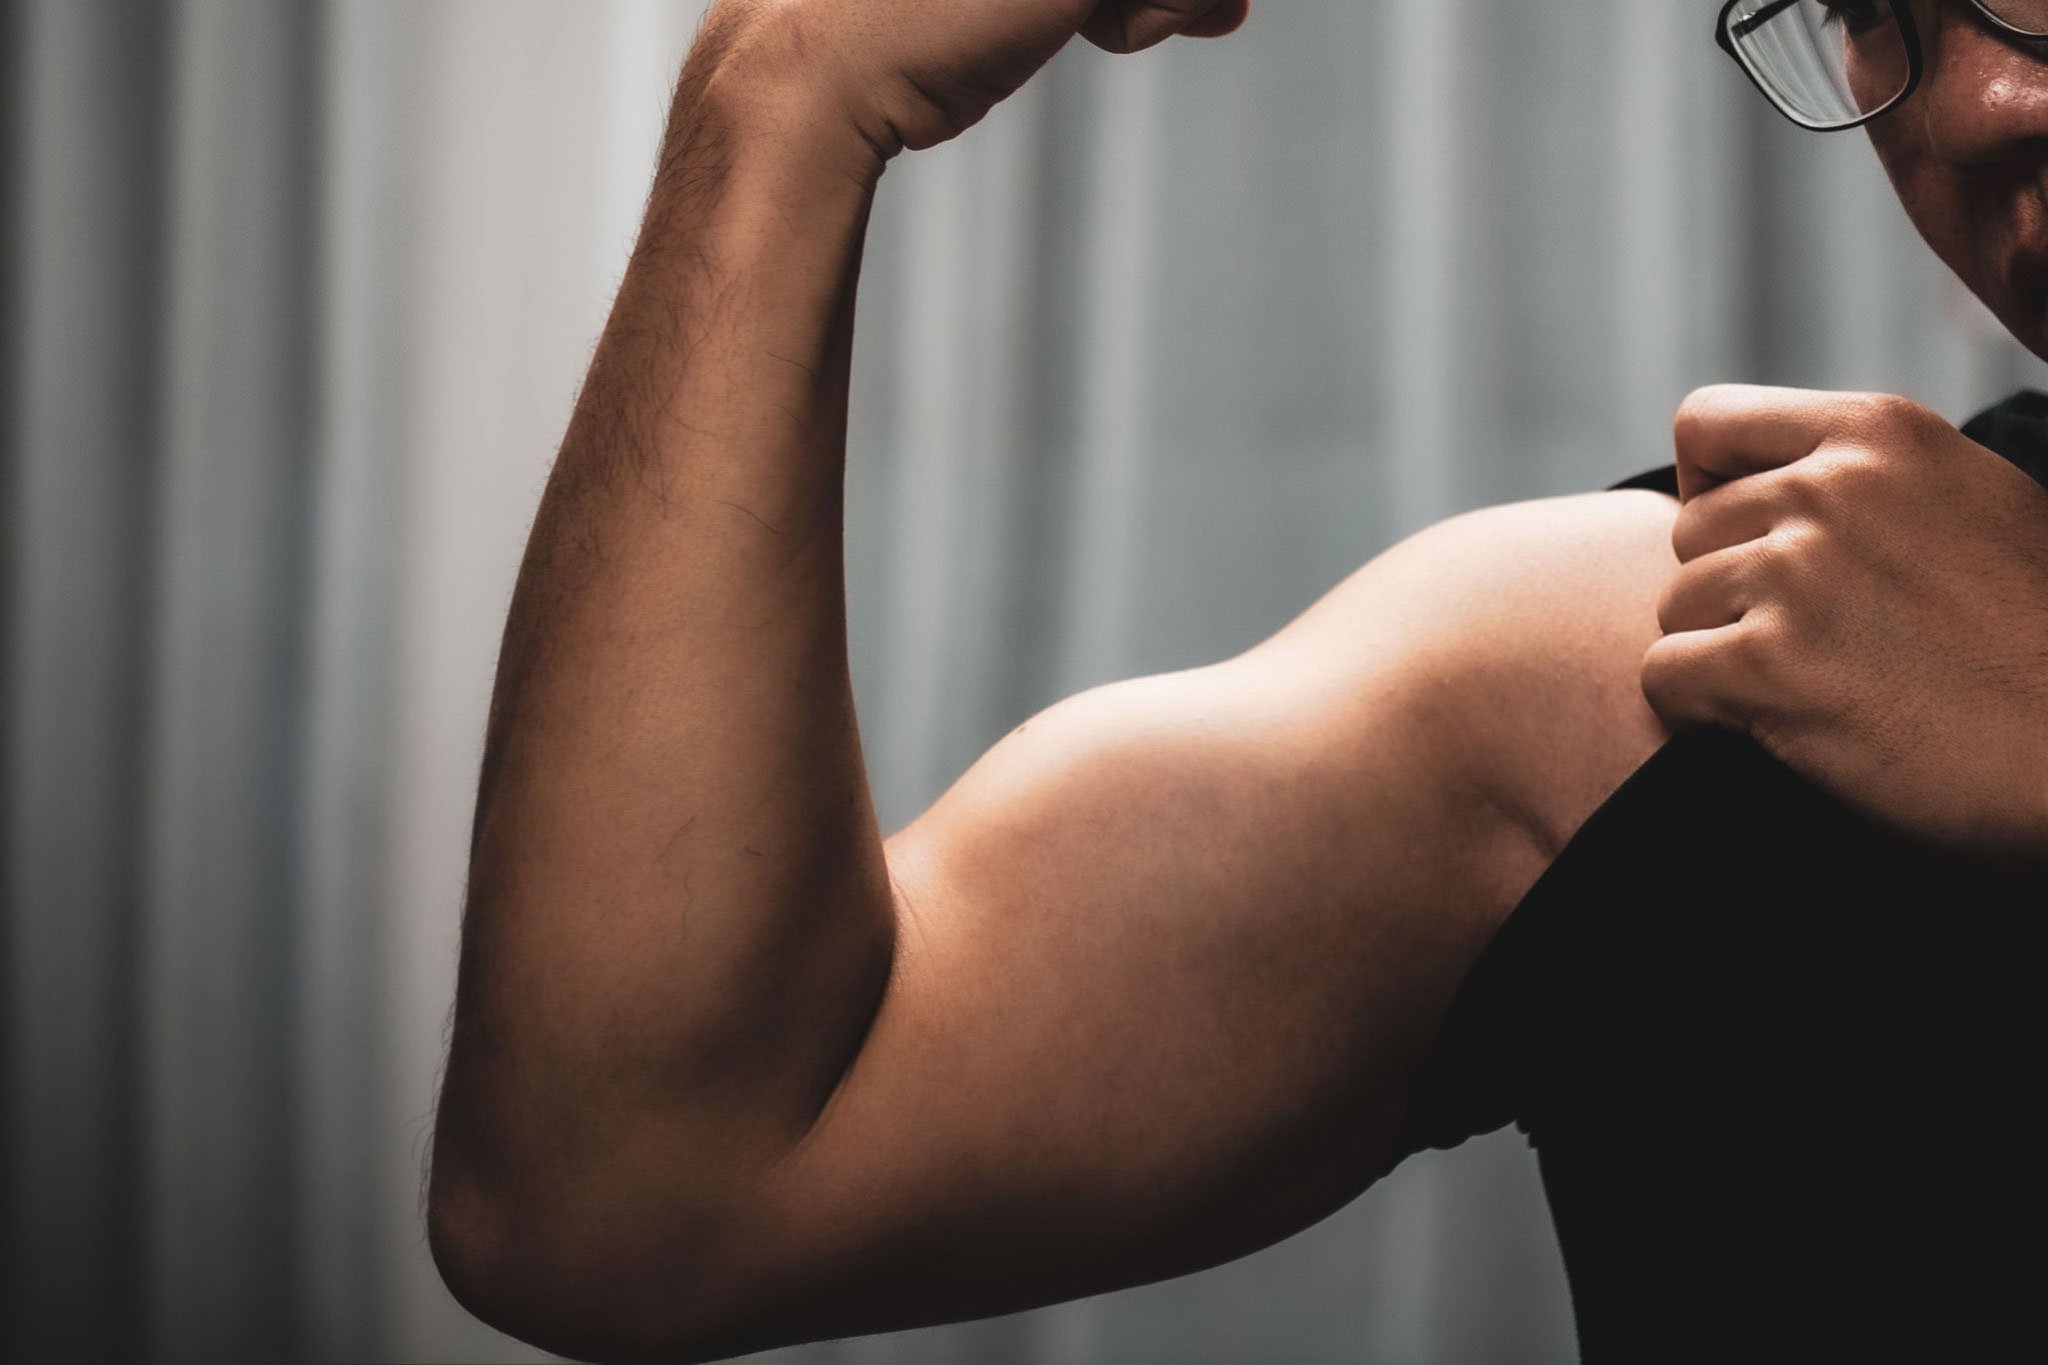 Anh em cực kỳ chú ý: tập gym - sử dụng Testosterone và vô sinh